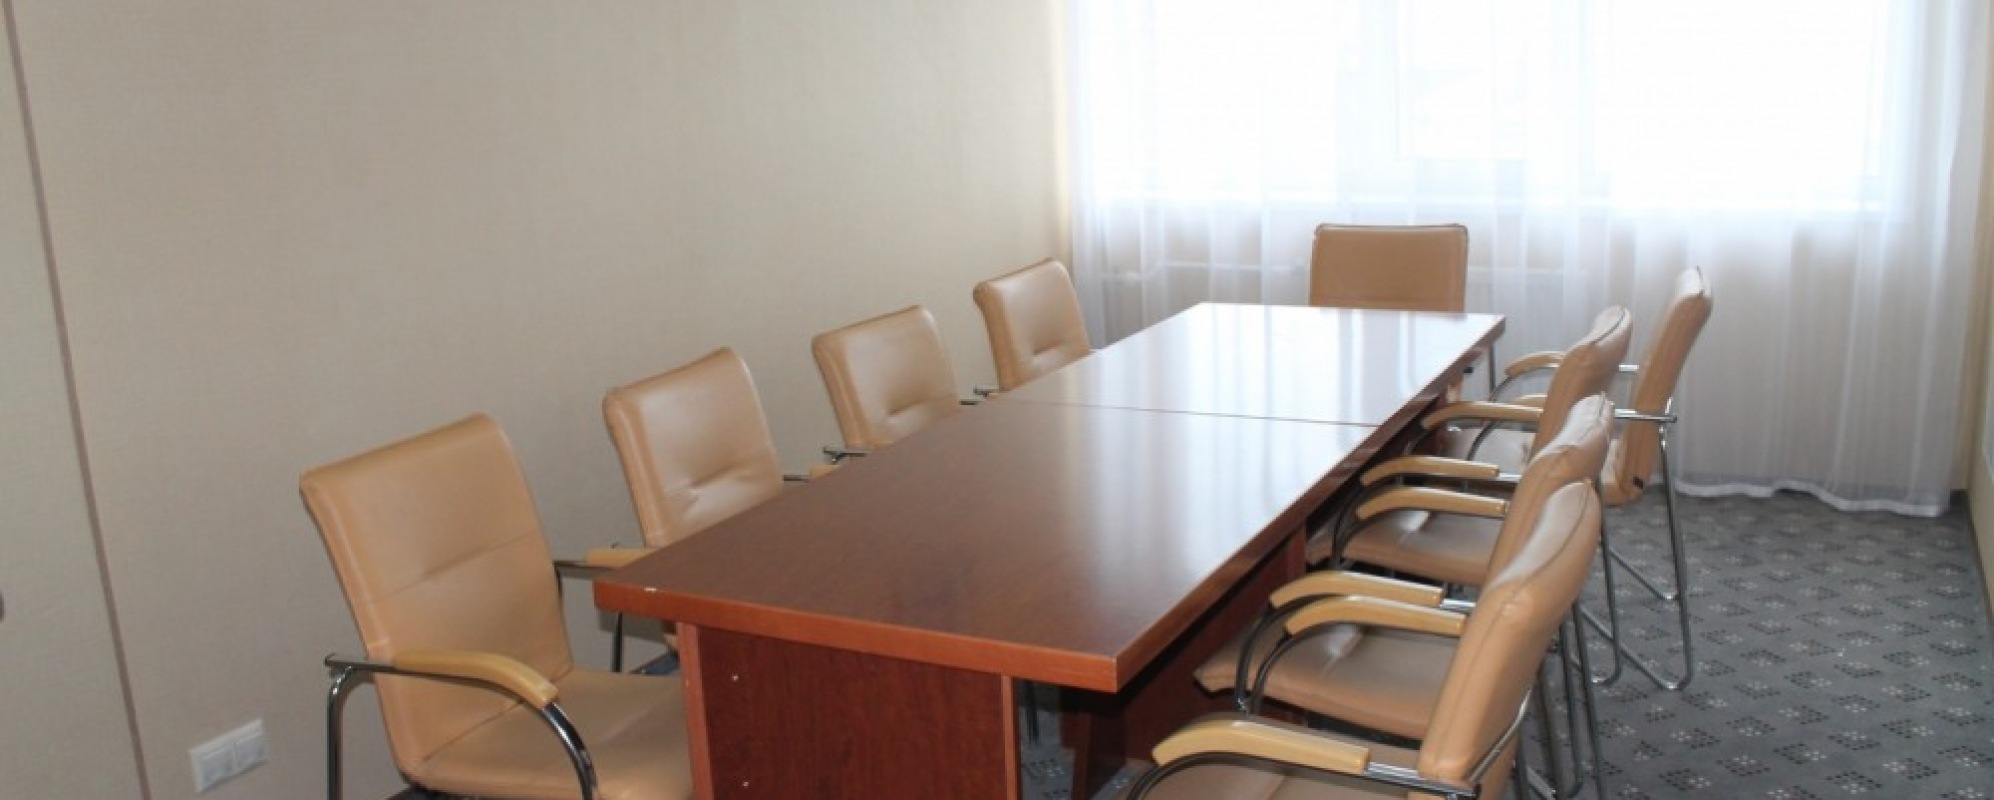 Фотографии комнаты для переговоров Комната переговоров